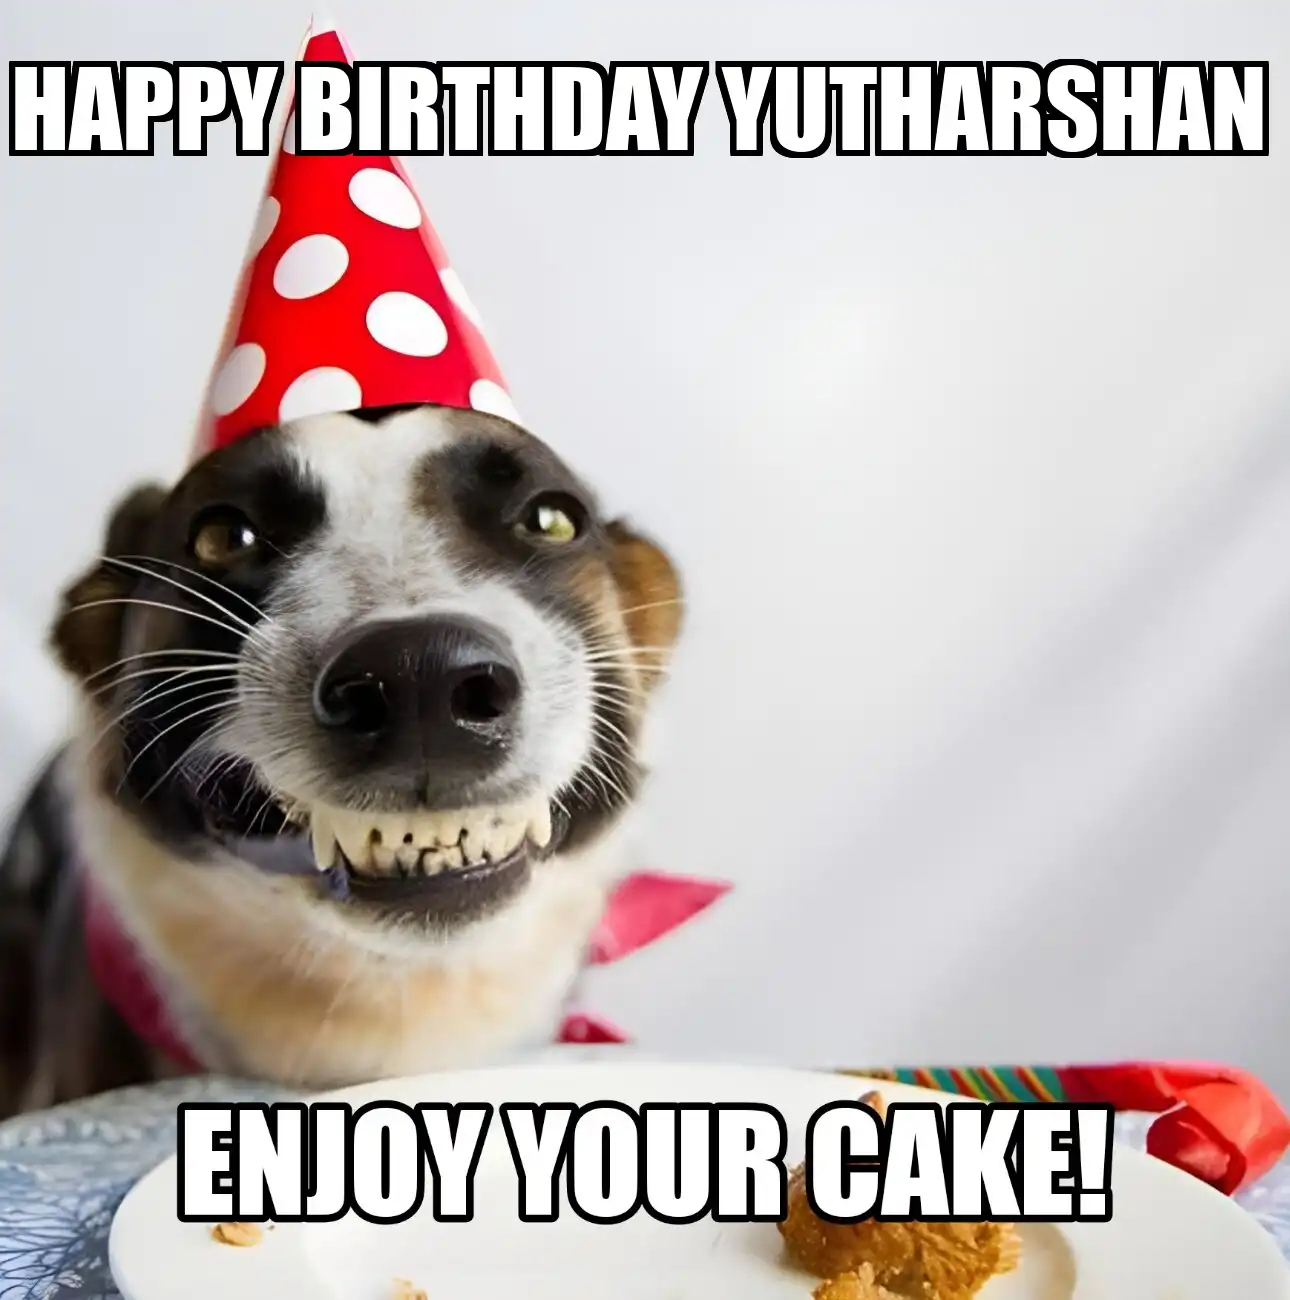 Happy Birthday Yutharshan Enjoy Your Cake Dog Meme